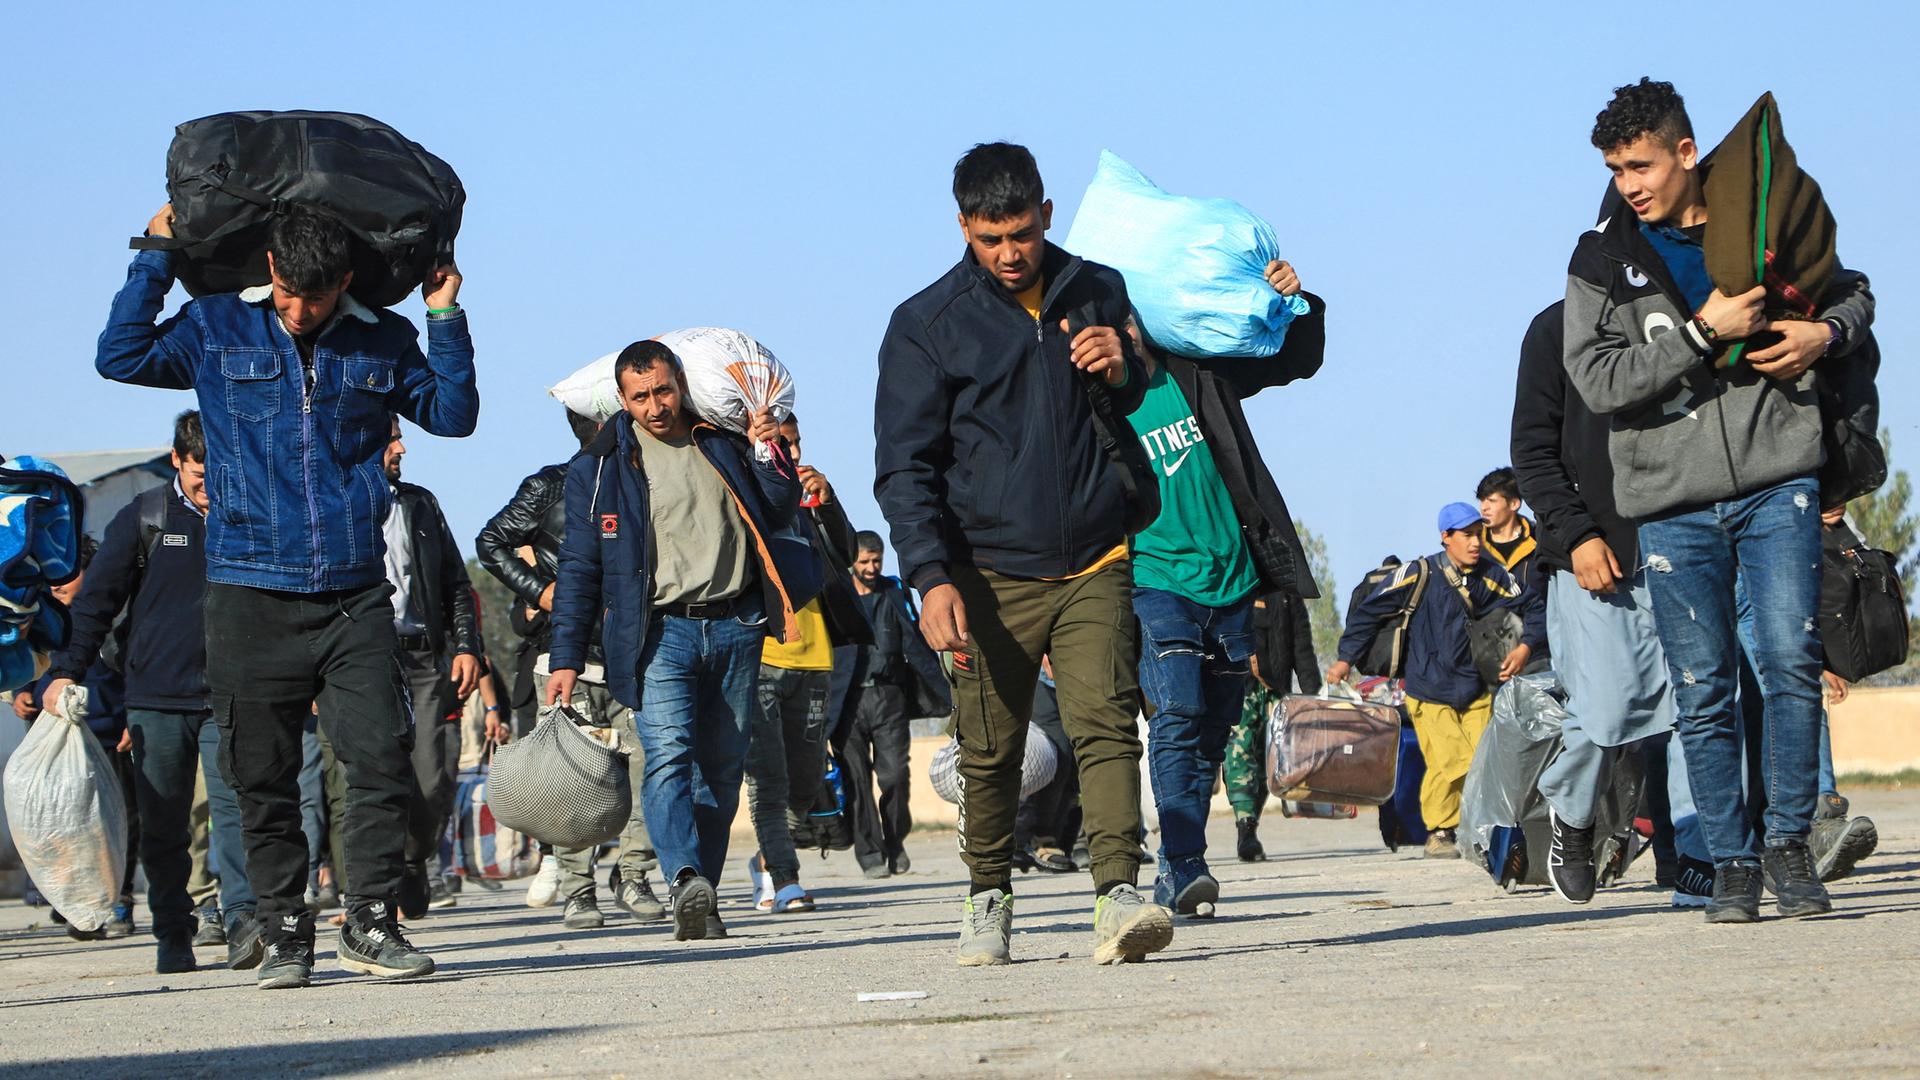 Männer gehen auf einer Straße in Afghanistan. Sie kommen aus dem Iran und tragen Säcke mit ihren Habseligkeiten auf ihren Schultern.